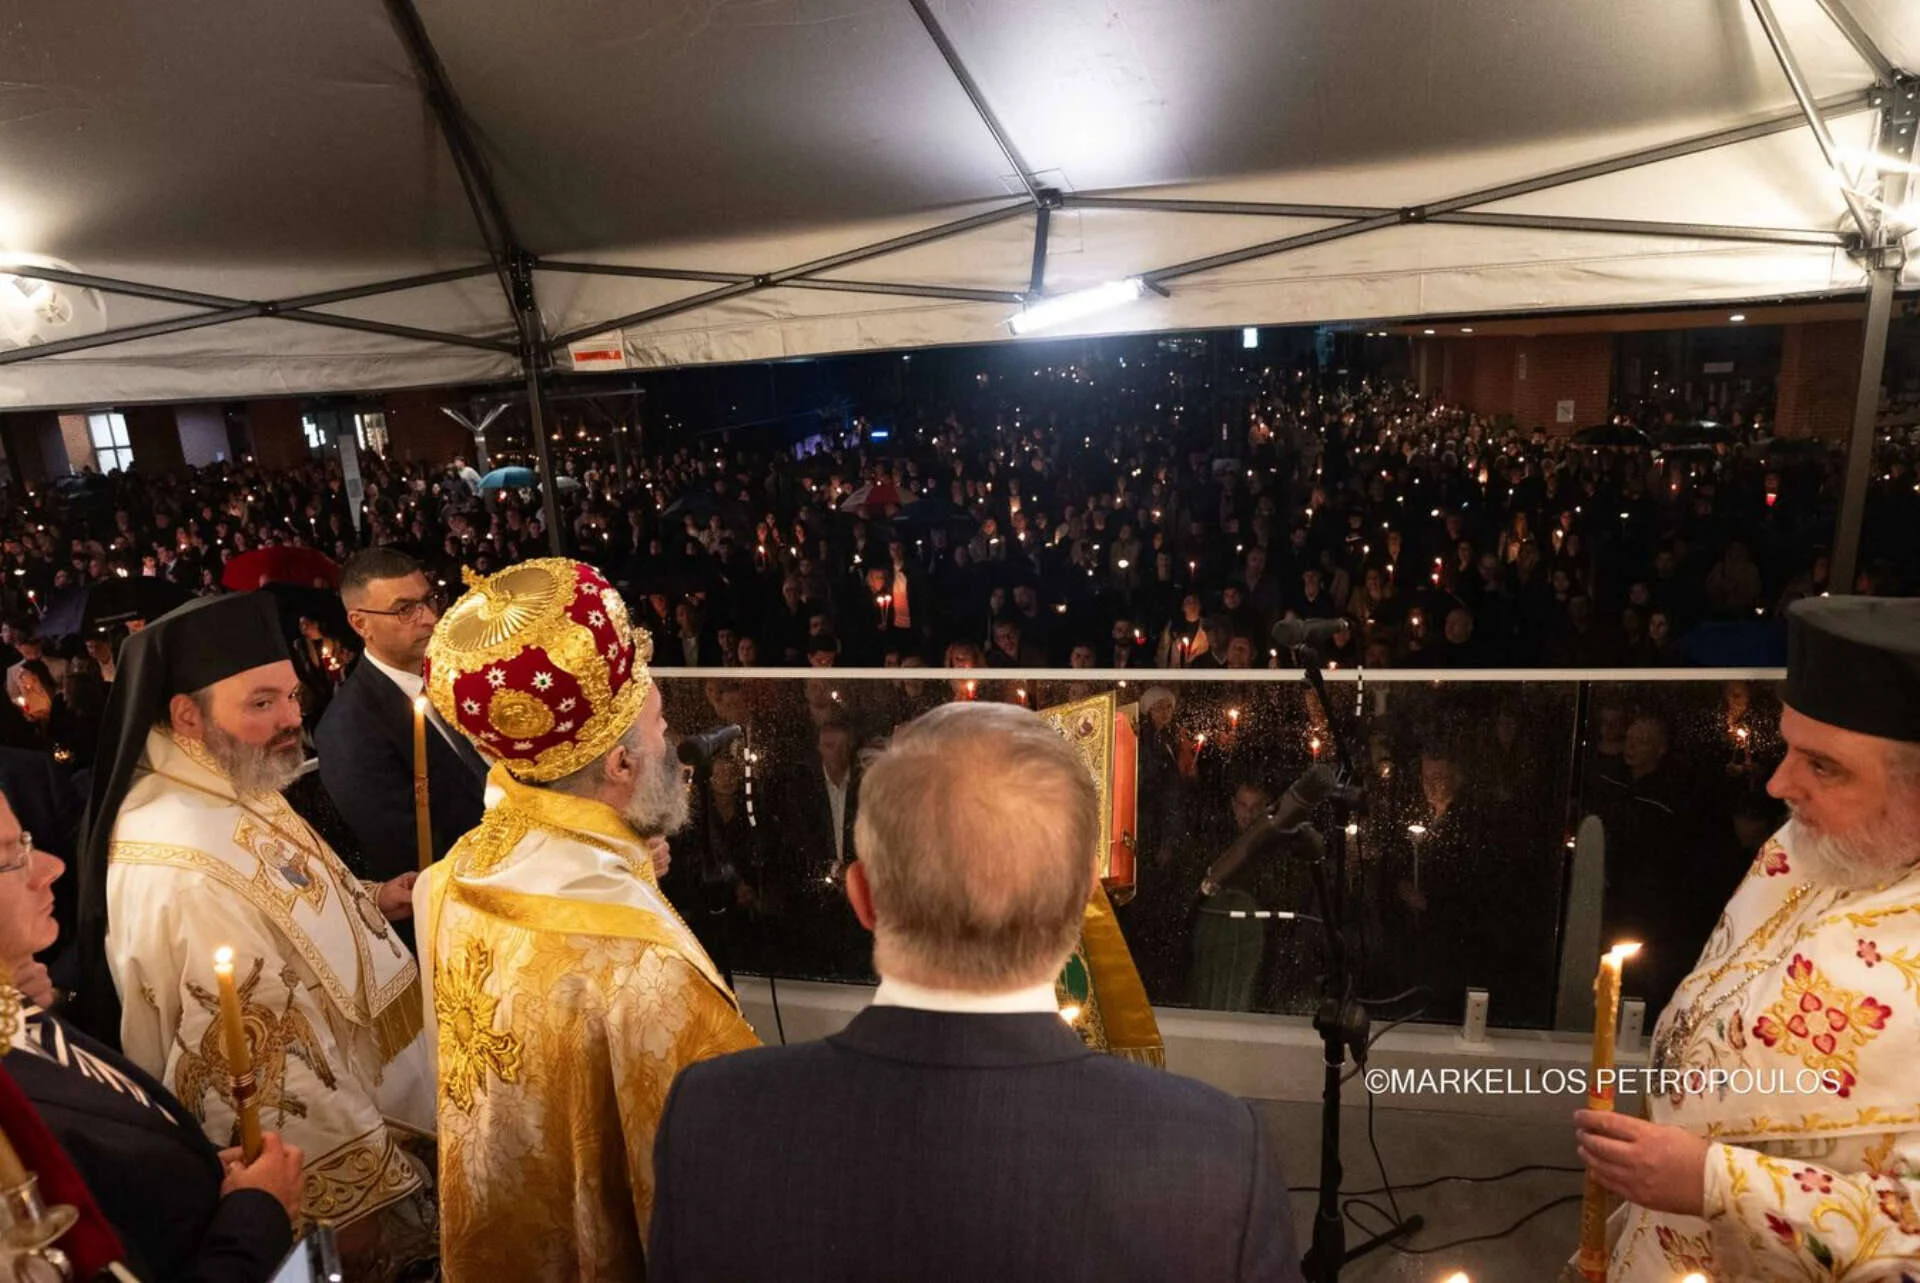 Παρουσία του Πρωθυπουργού της Αυστραλίας η Ανάσταση στο Σίδνεϊ – Χιλιάδες στις Εκκλησίες